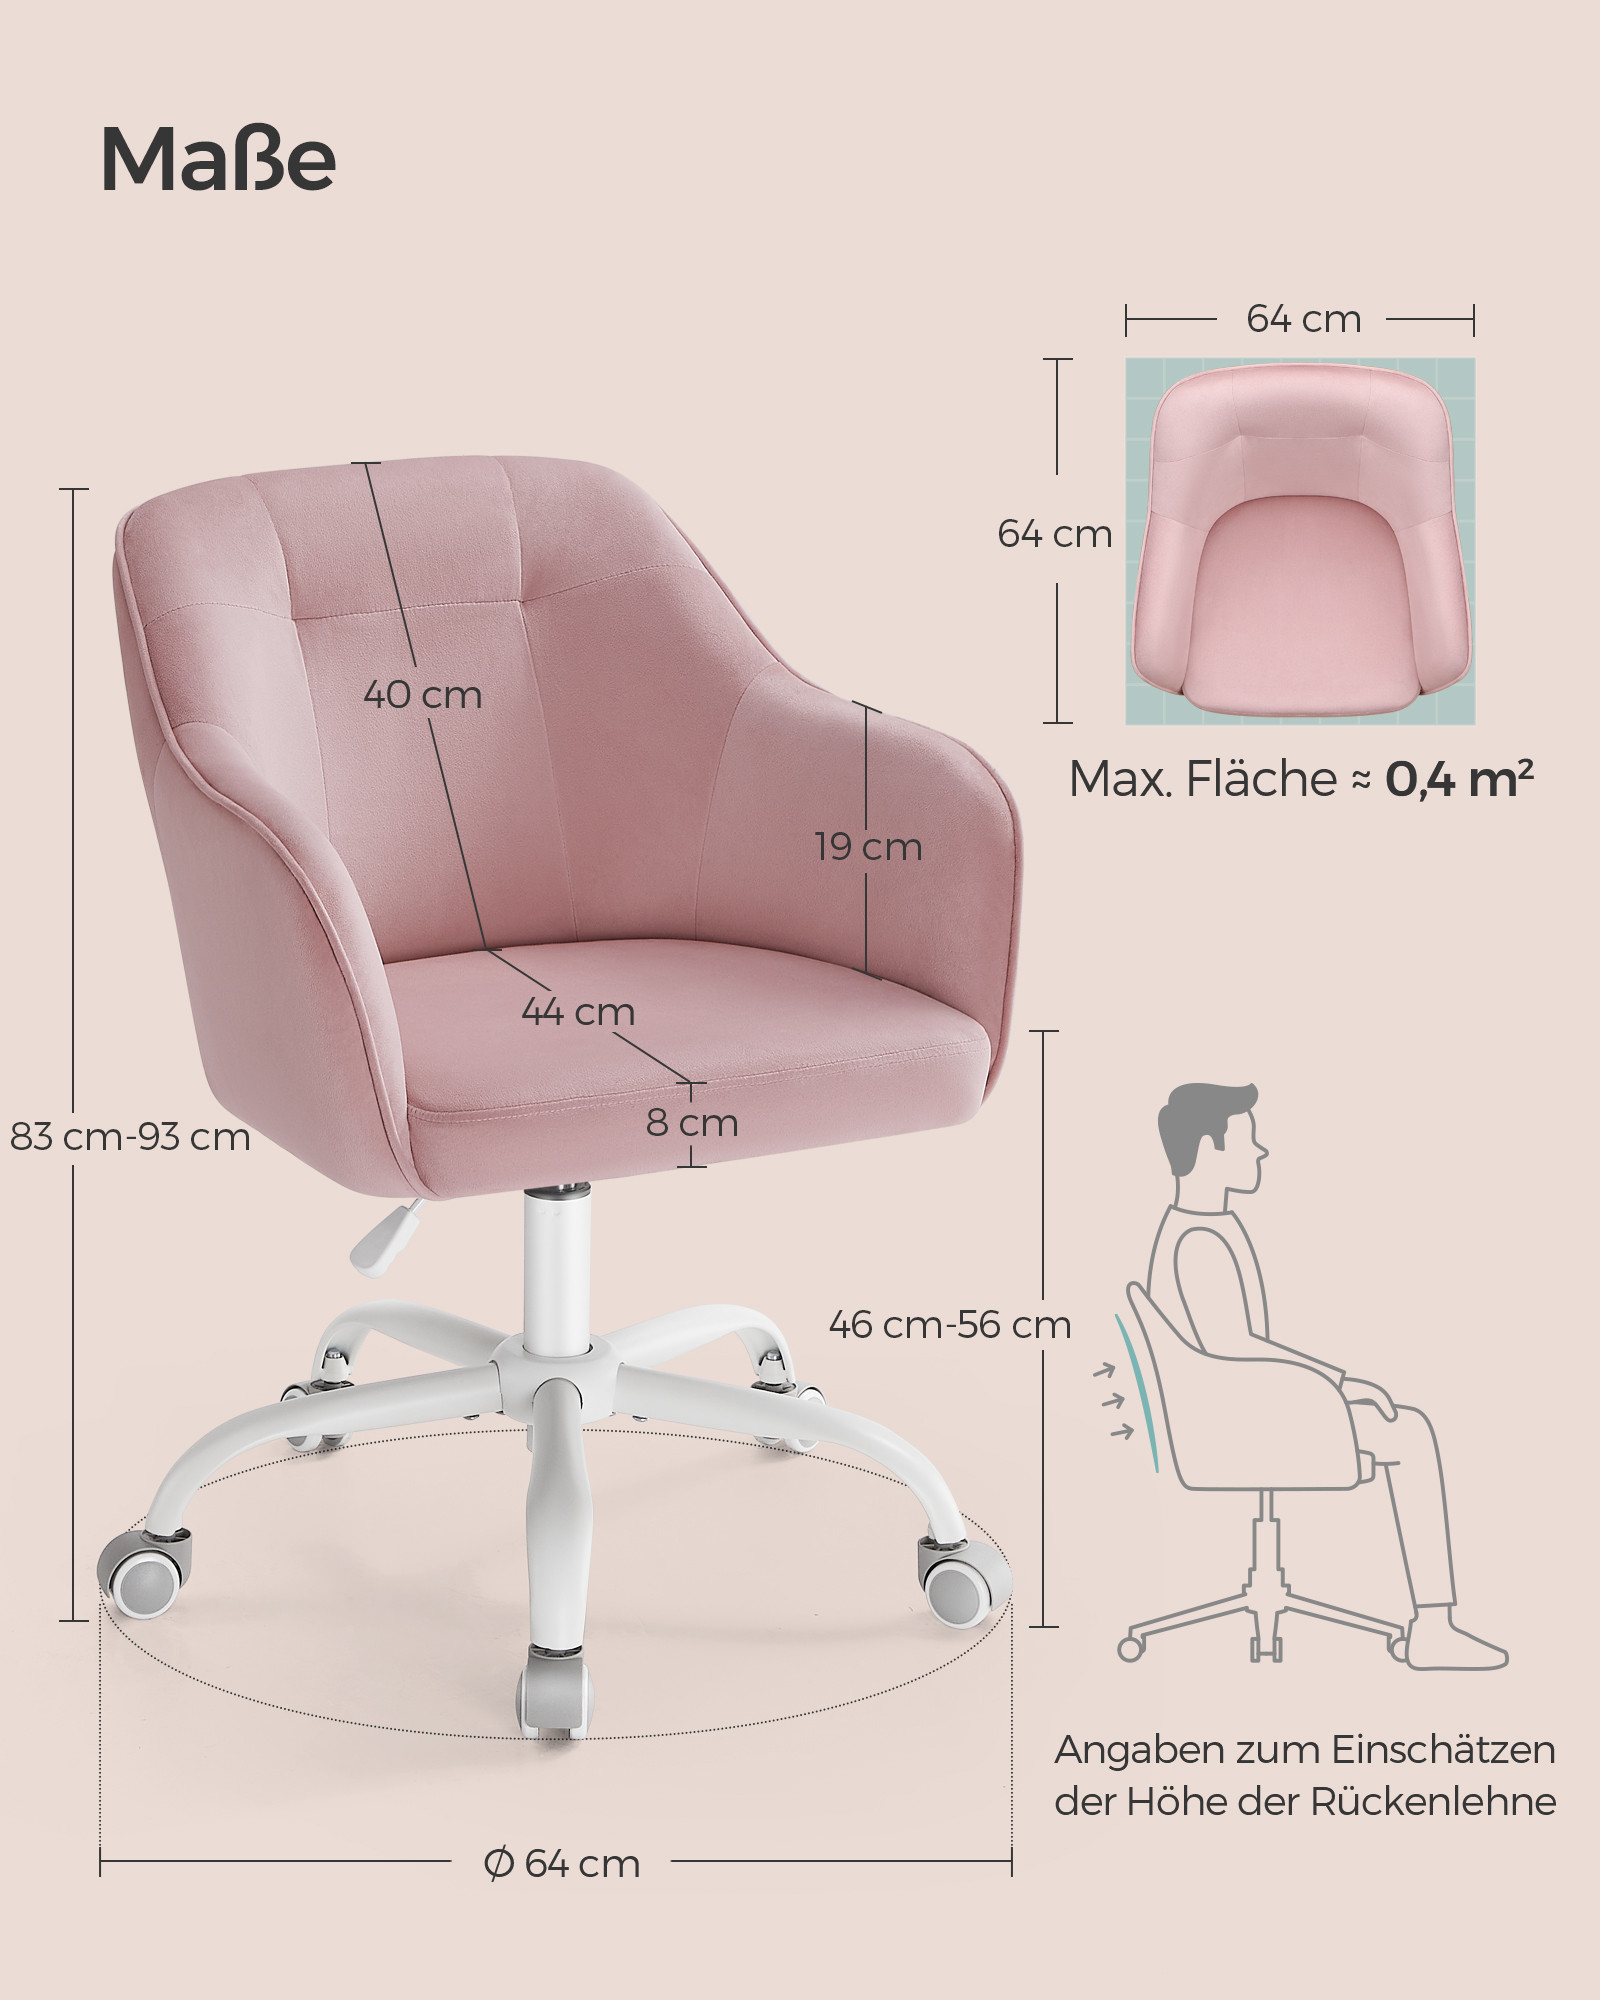 Kancelárska stolička OBG019P02